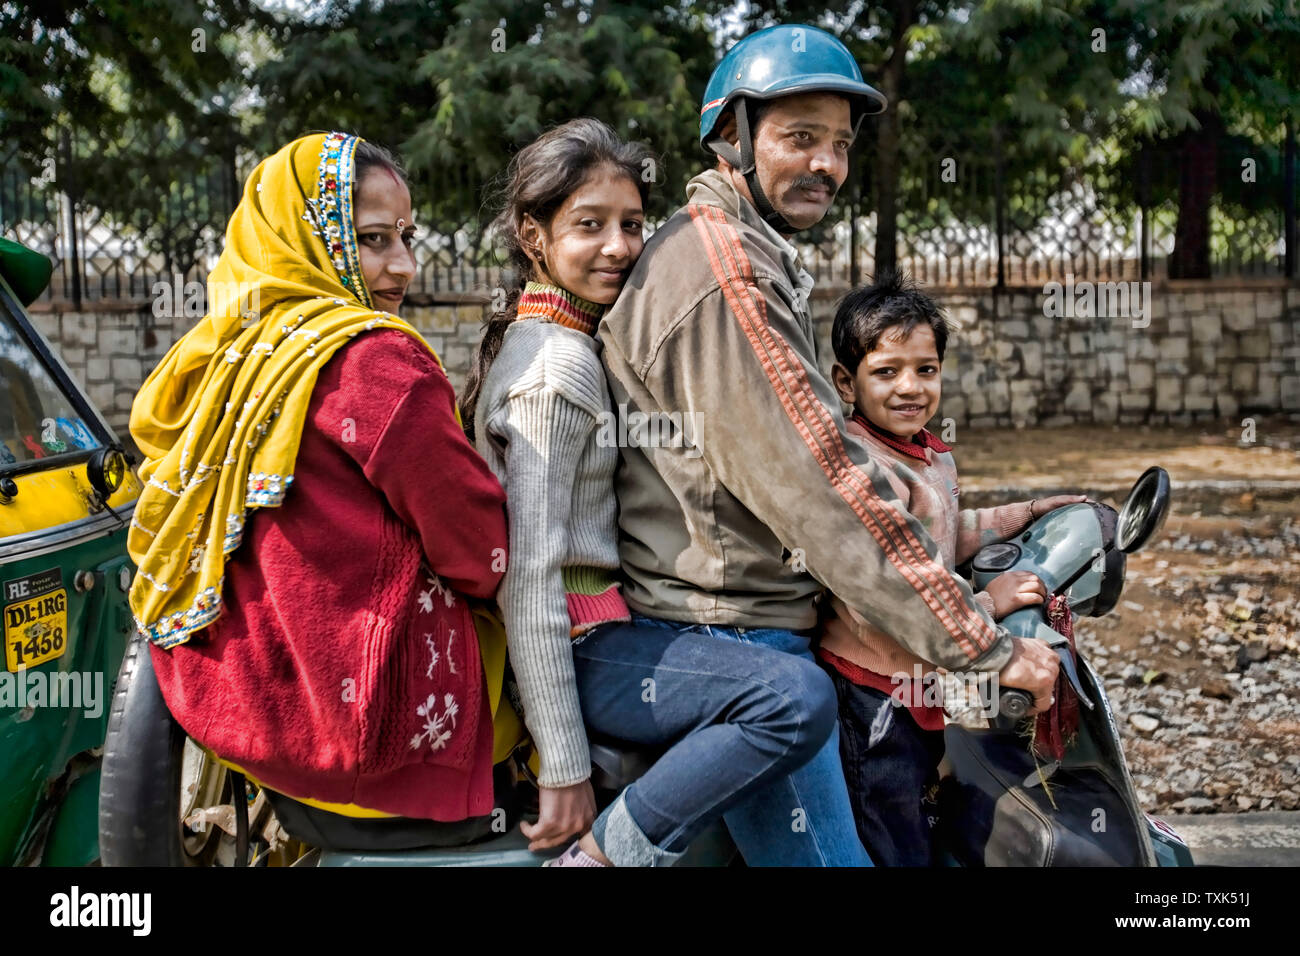 Une famille entière sur un scooter Bajaj Indian la Vespa, New Delhi, de l'Uttar Pradesh, Inde, Asie. Banque D'Images